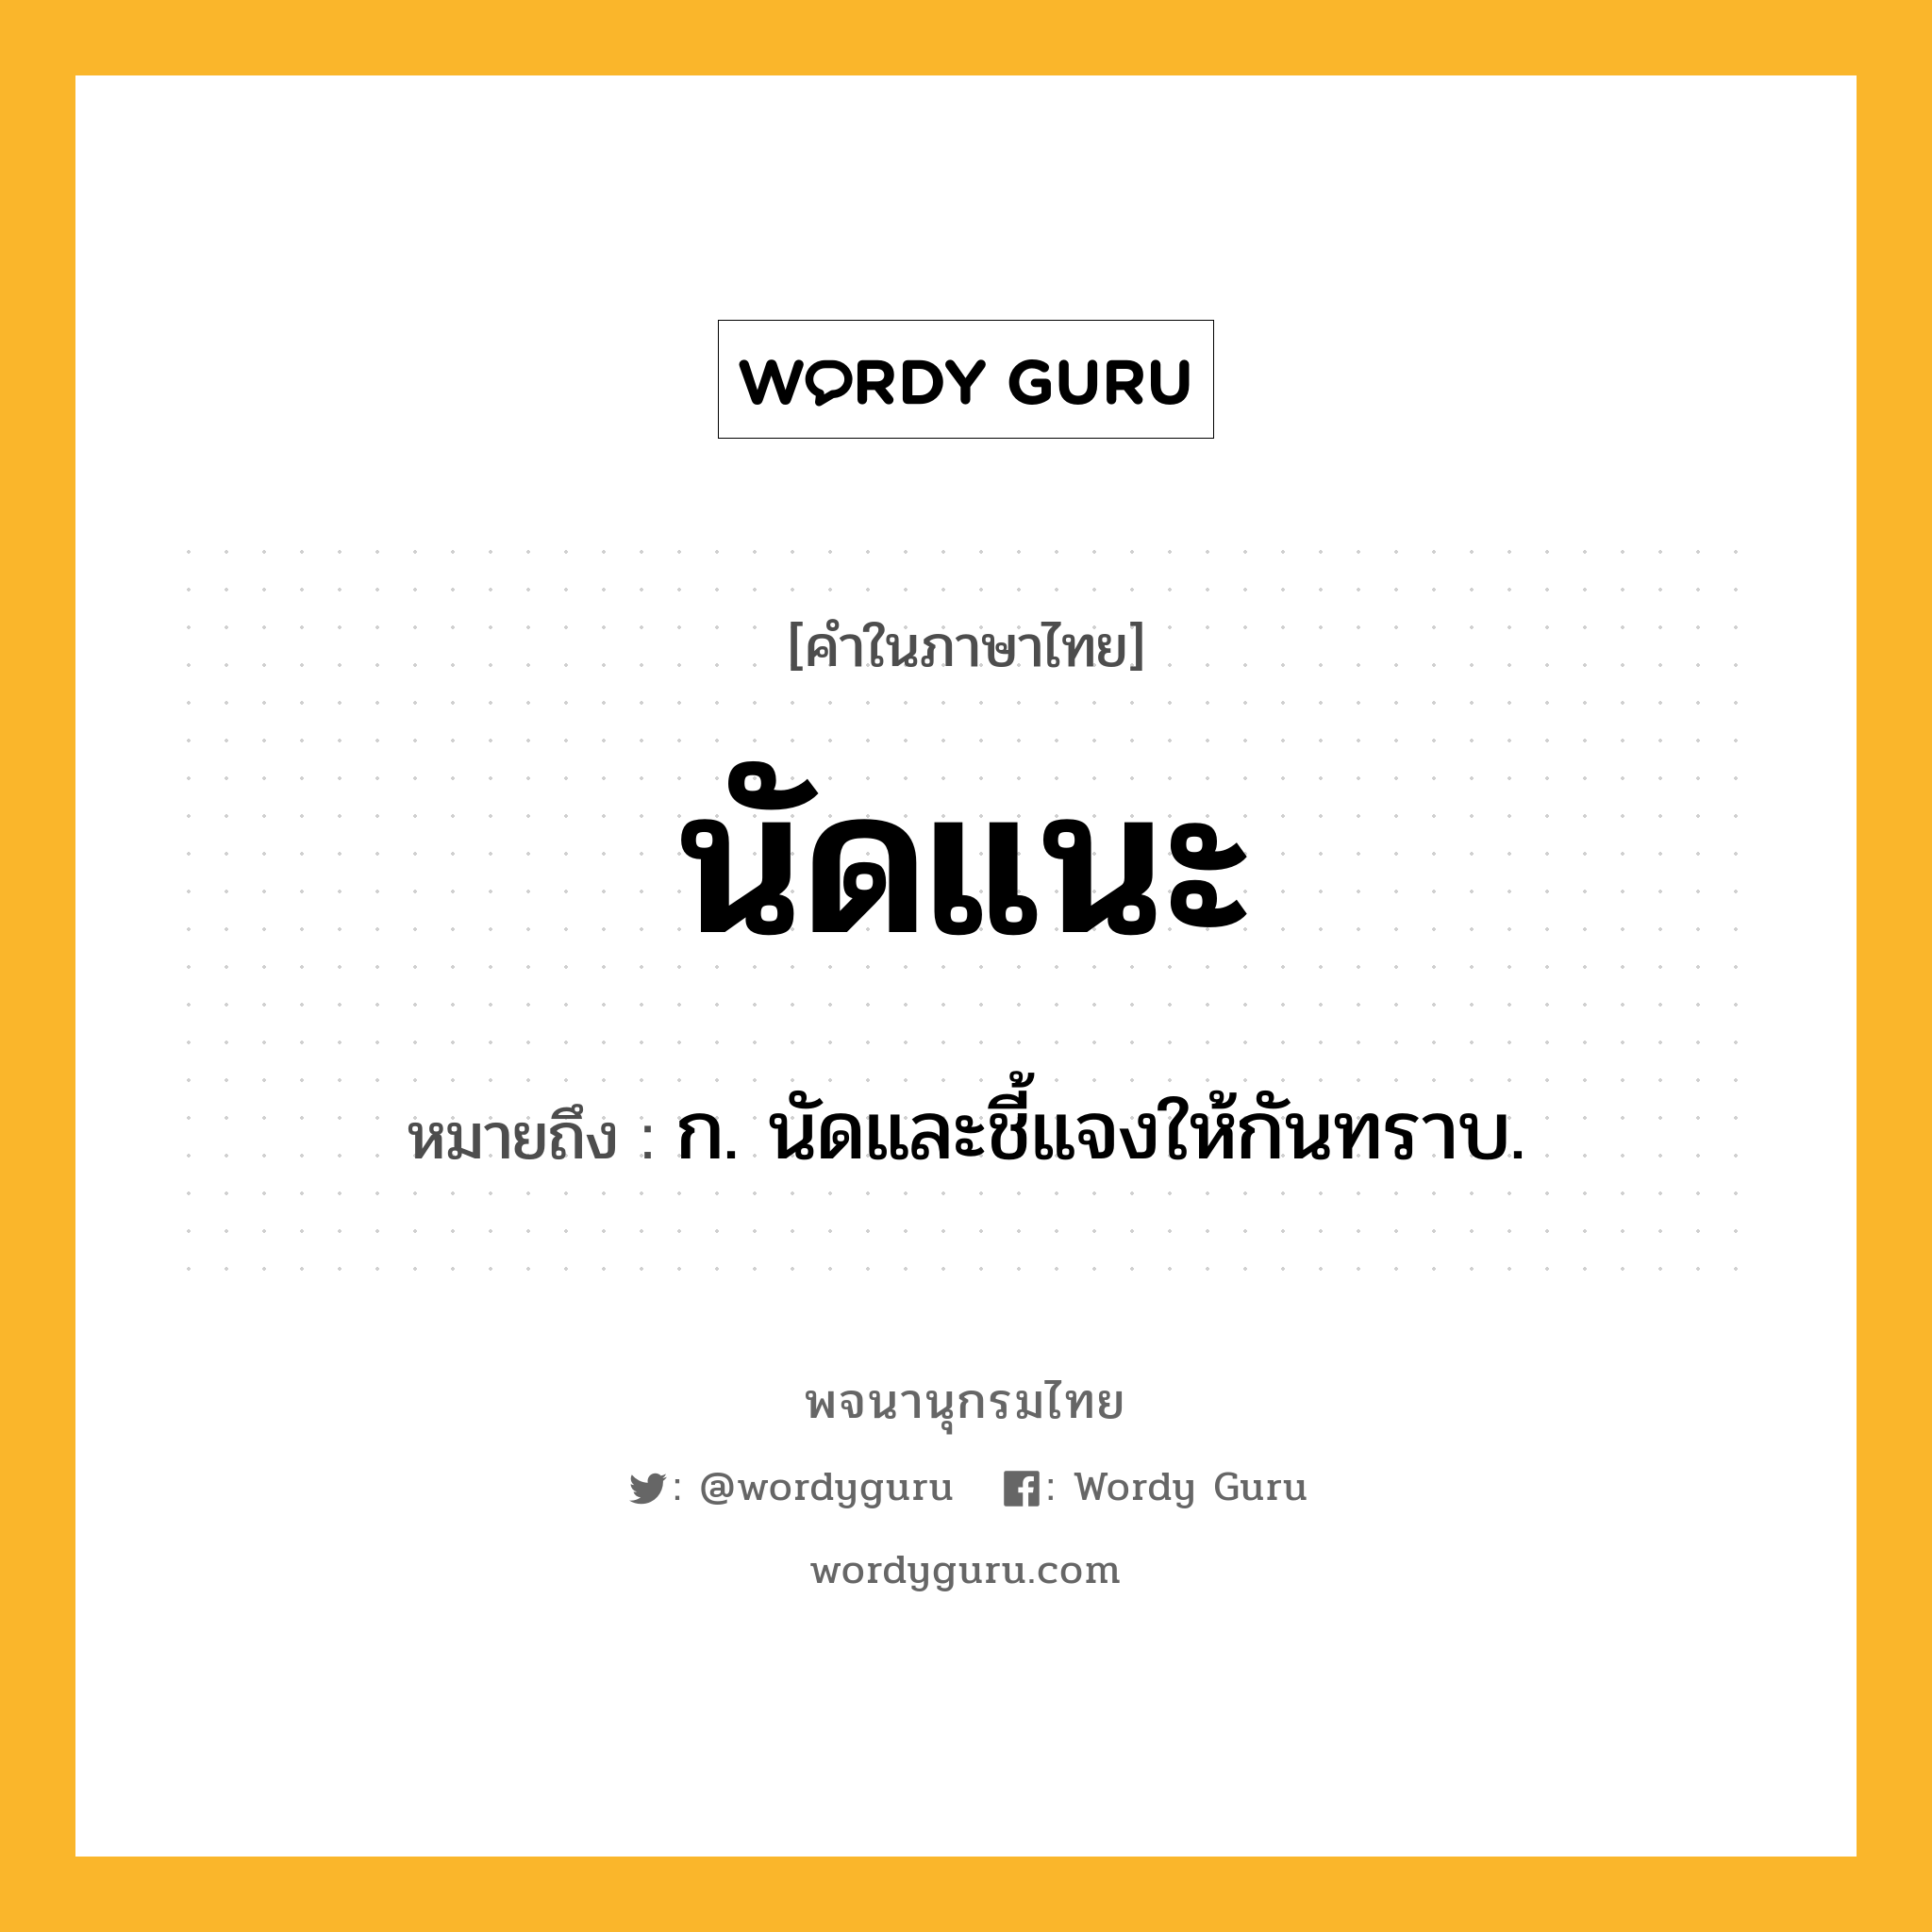 นัดแนะ หมายถึงอะไร?, คำในภาษาไทย นัดแนะ หมายถึง ก. นัดและชี้แจงให้กันทราบ.